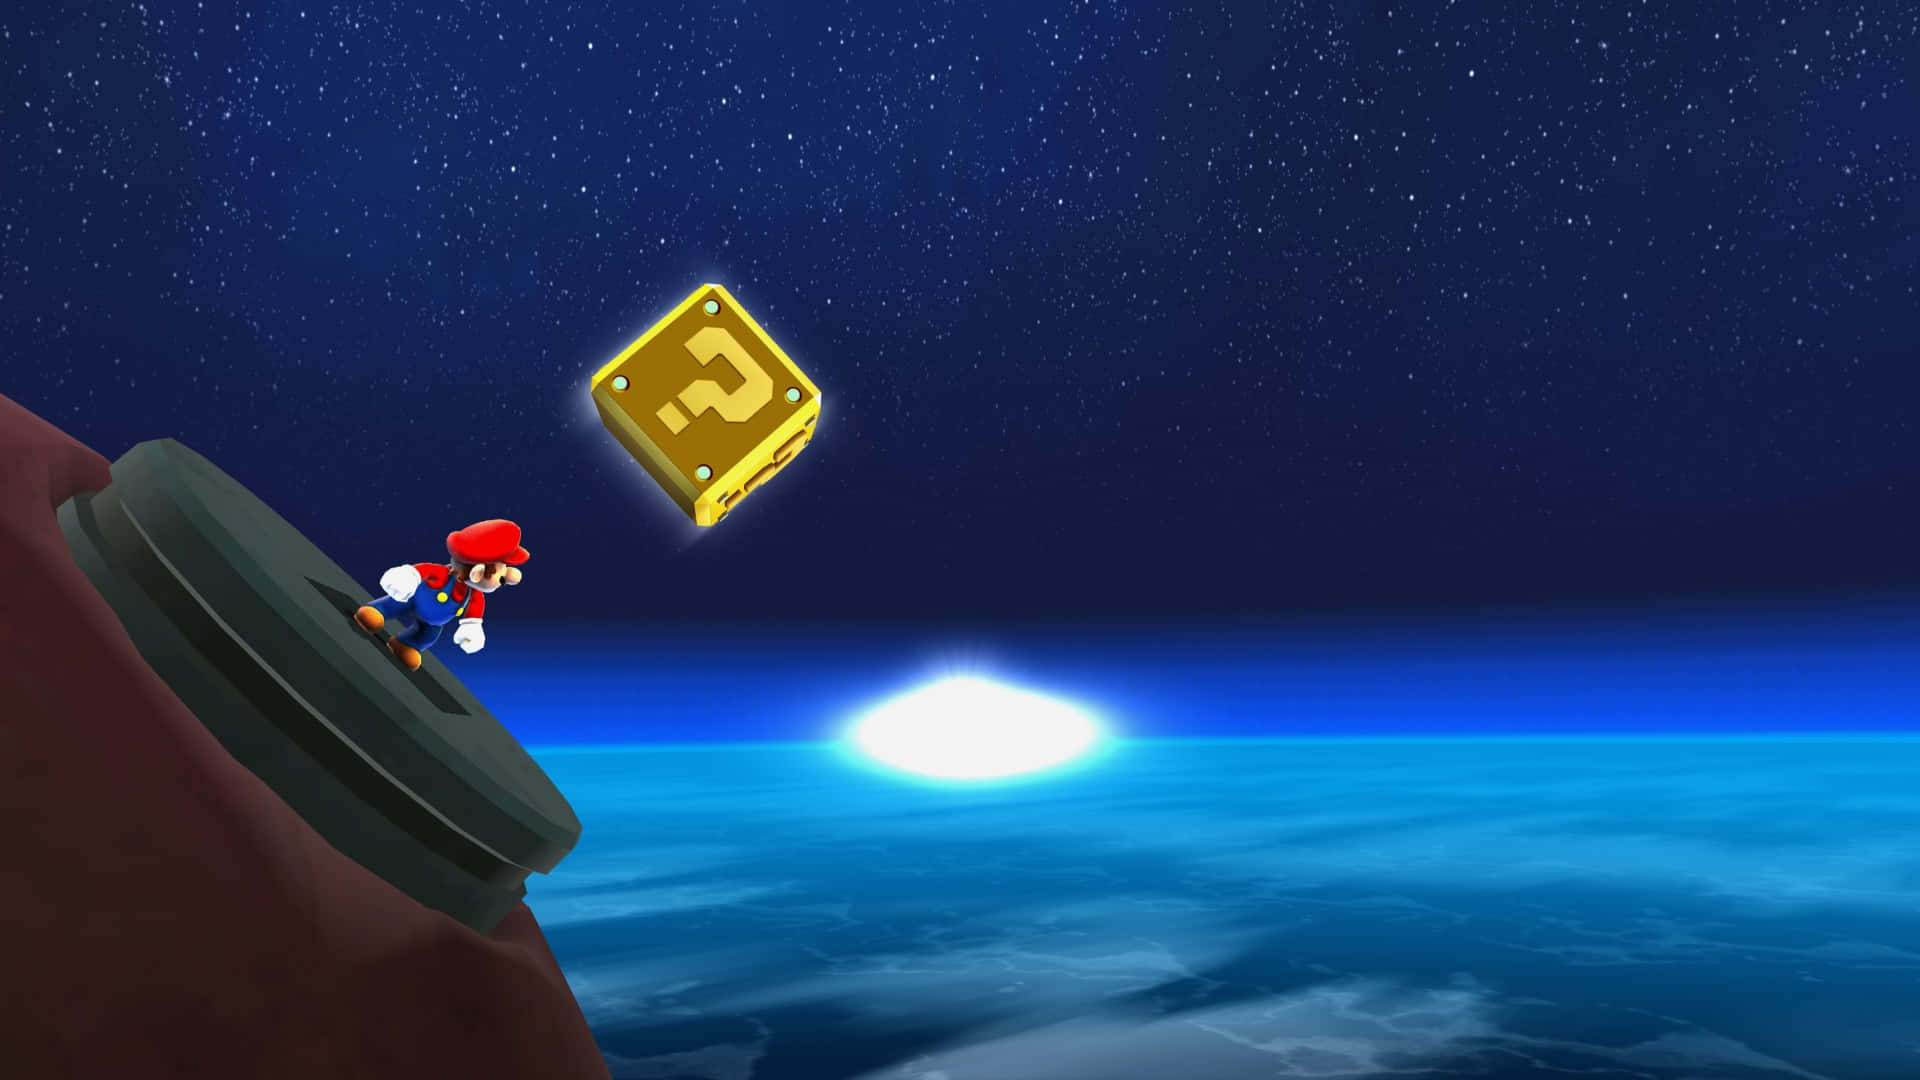 Super Mario udforsker en ny galakse på denne tapet. Wallpaper